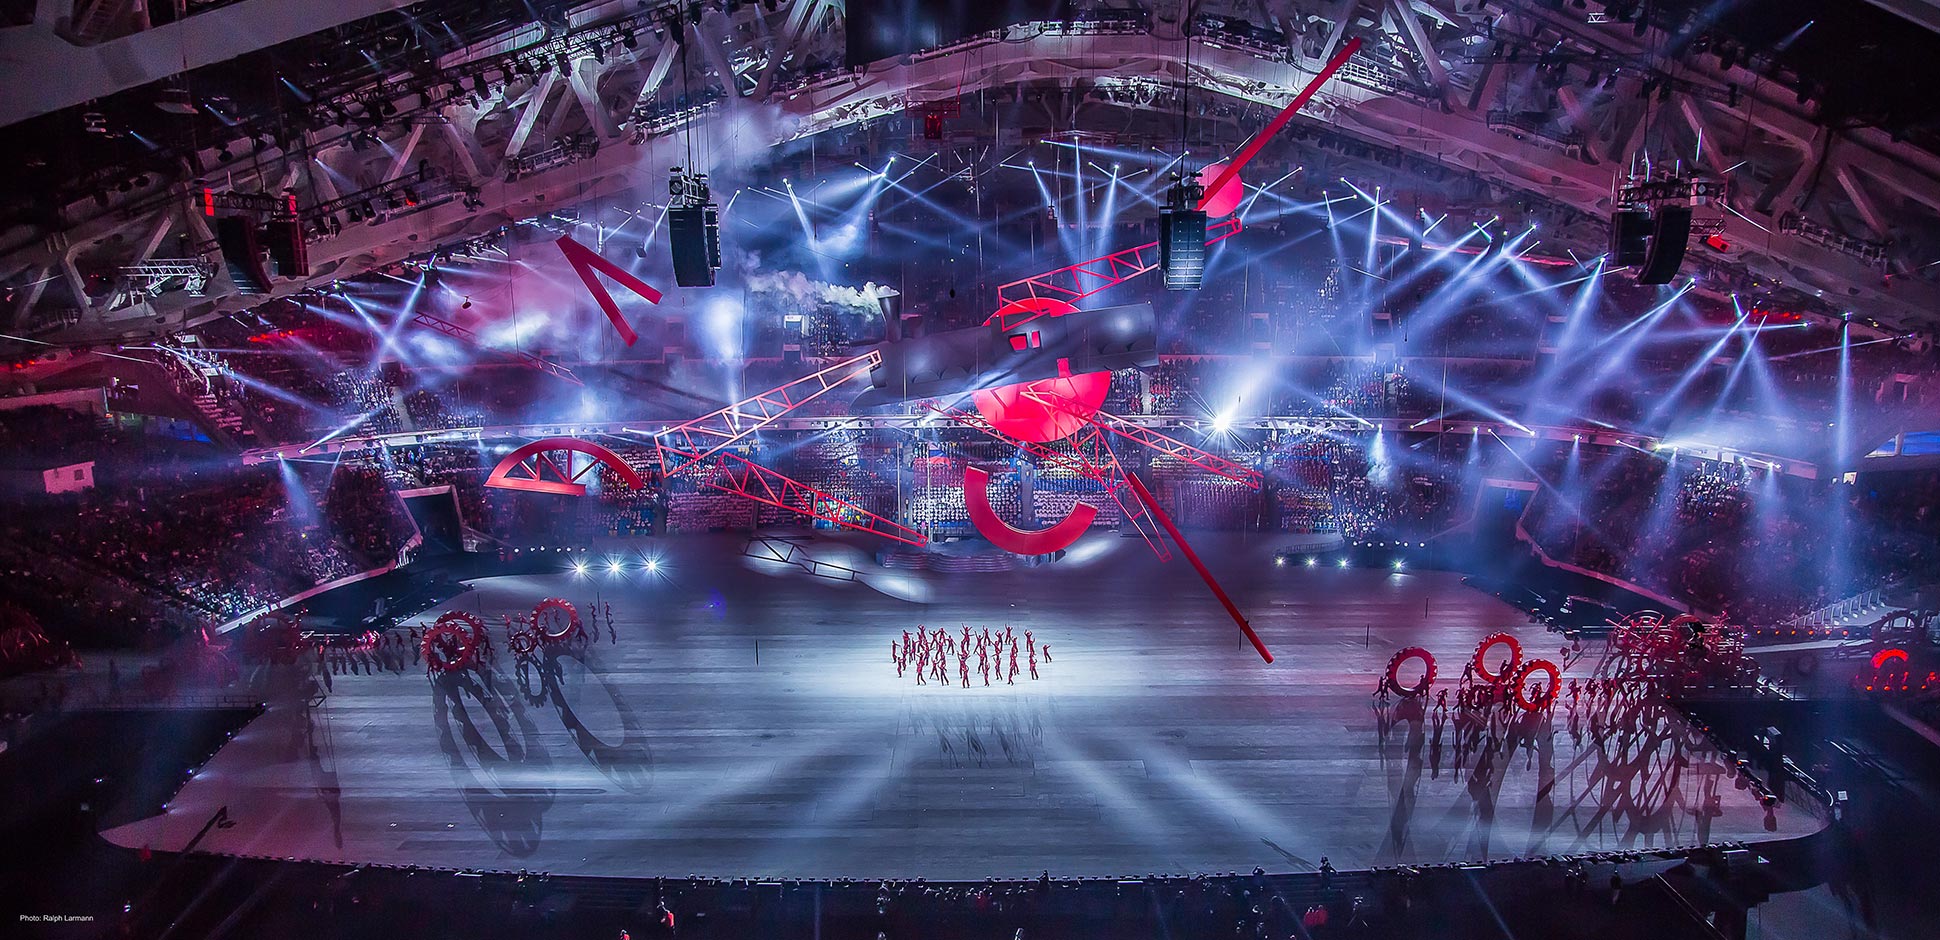 Sochi.Opening